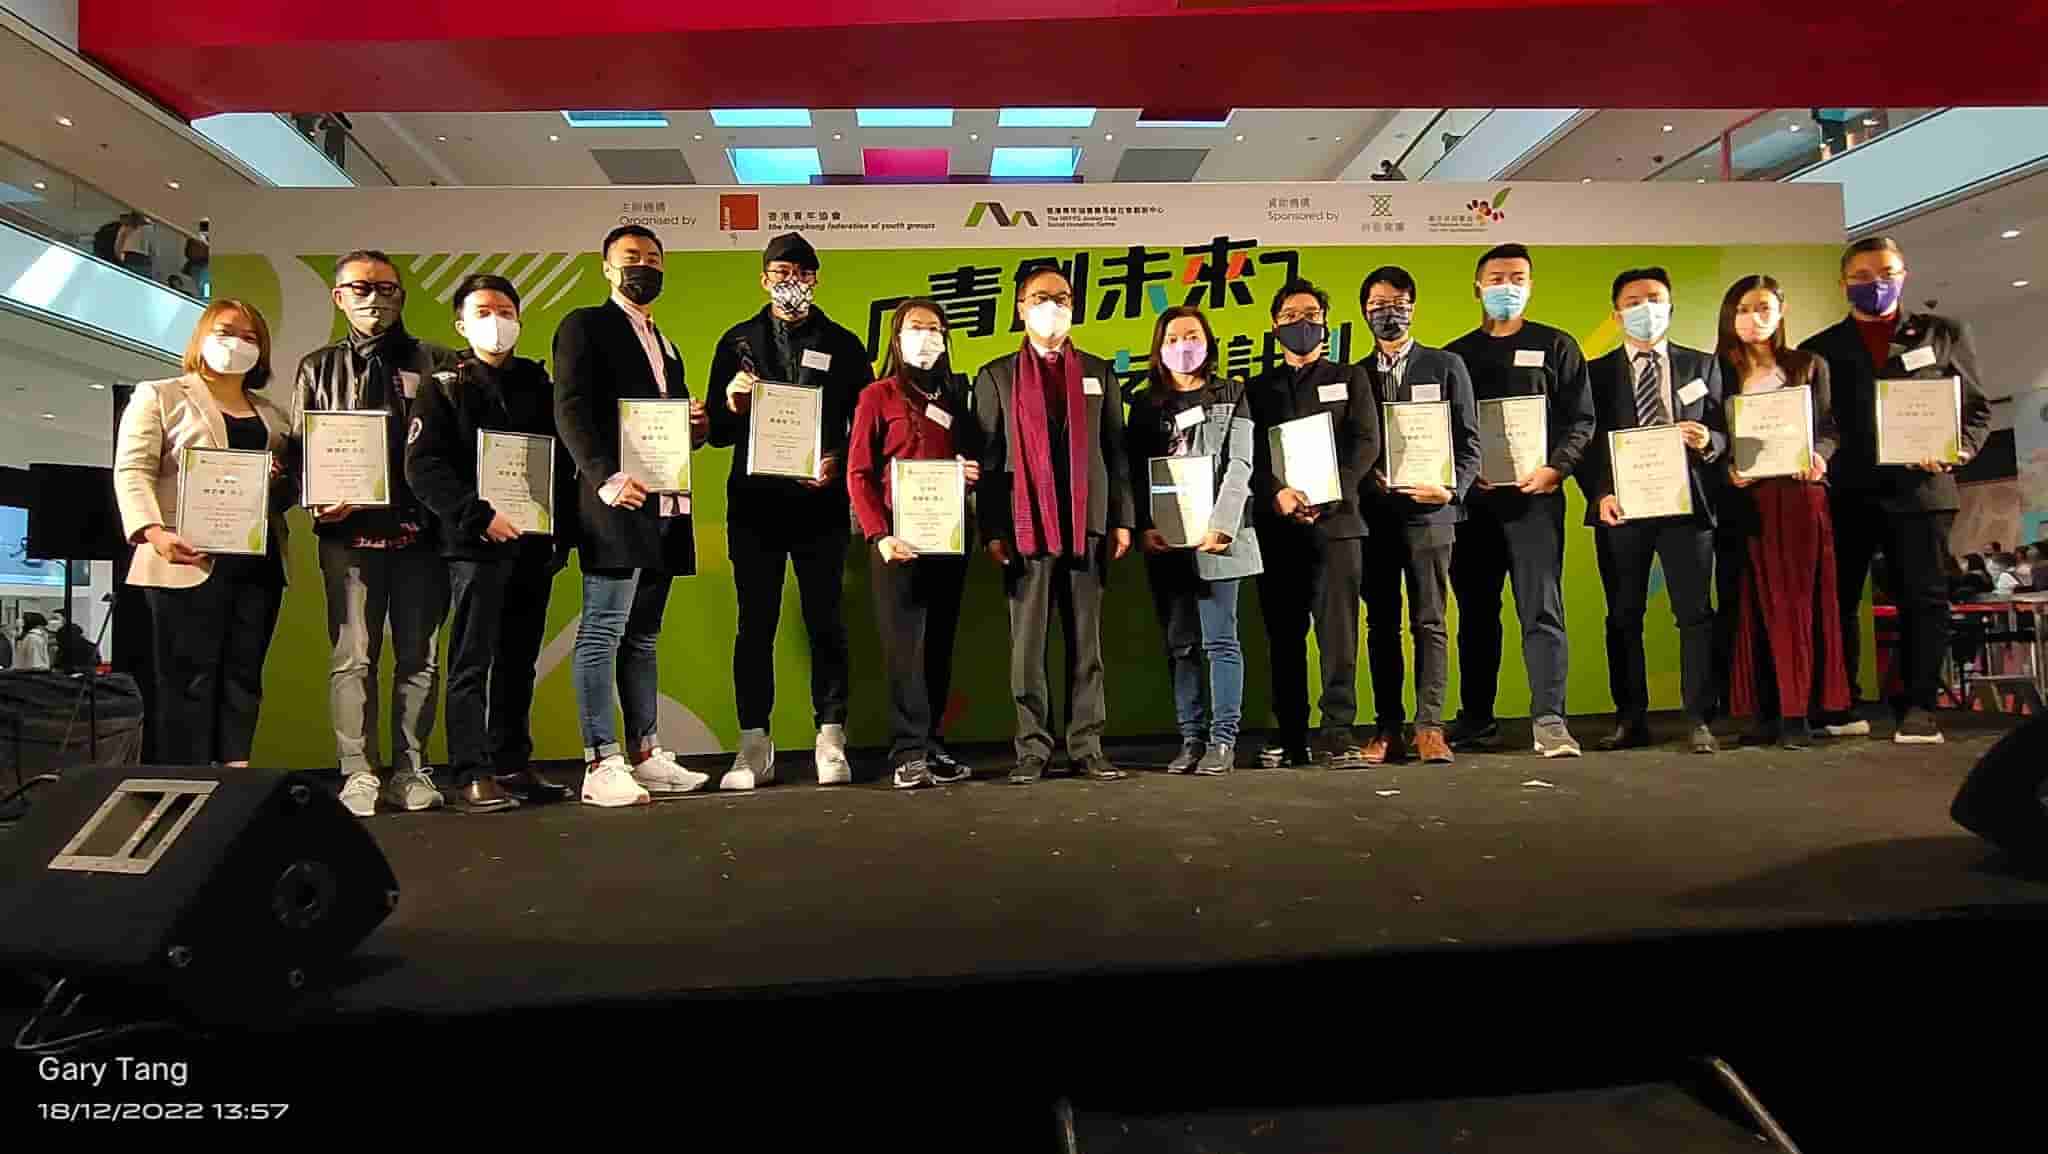 香港青年創業家總商會 - 香港青年協會主辦的「青創未來—青年創業支援計劃」頒獎典禮